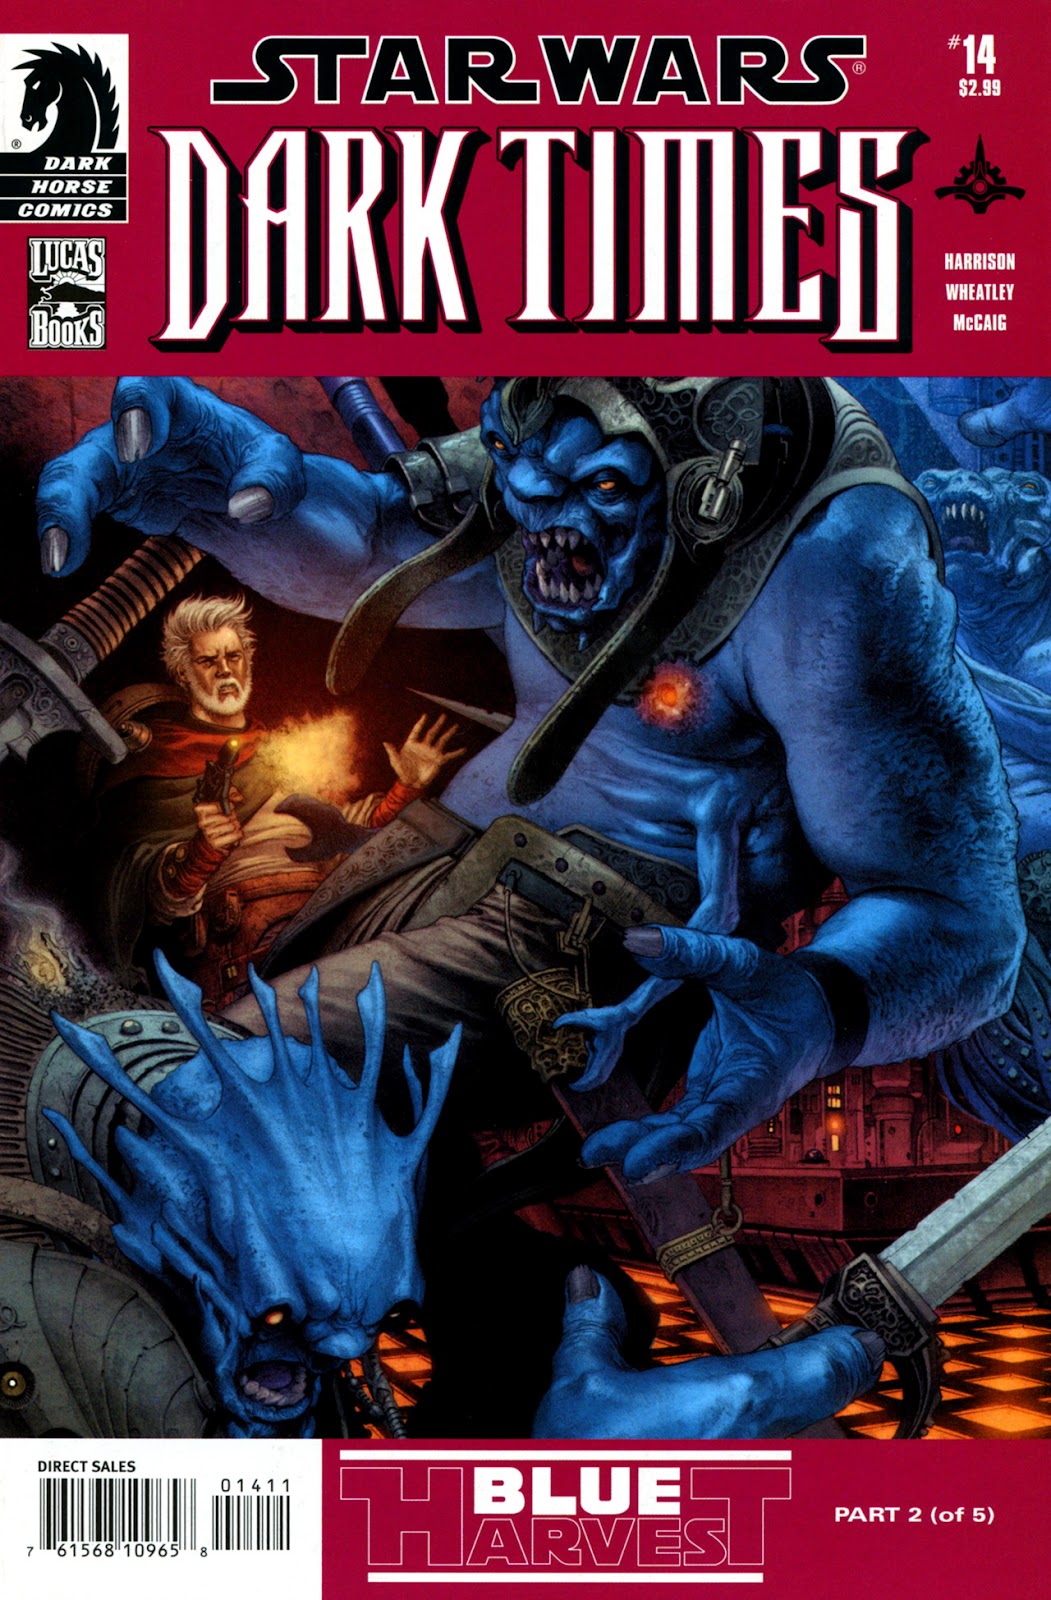 Star Wars: Dark Times issue 14 - Blue Harvest, Part 2 - Page 2